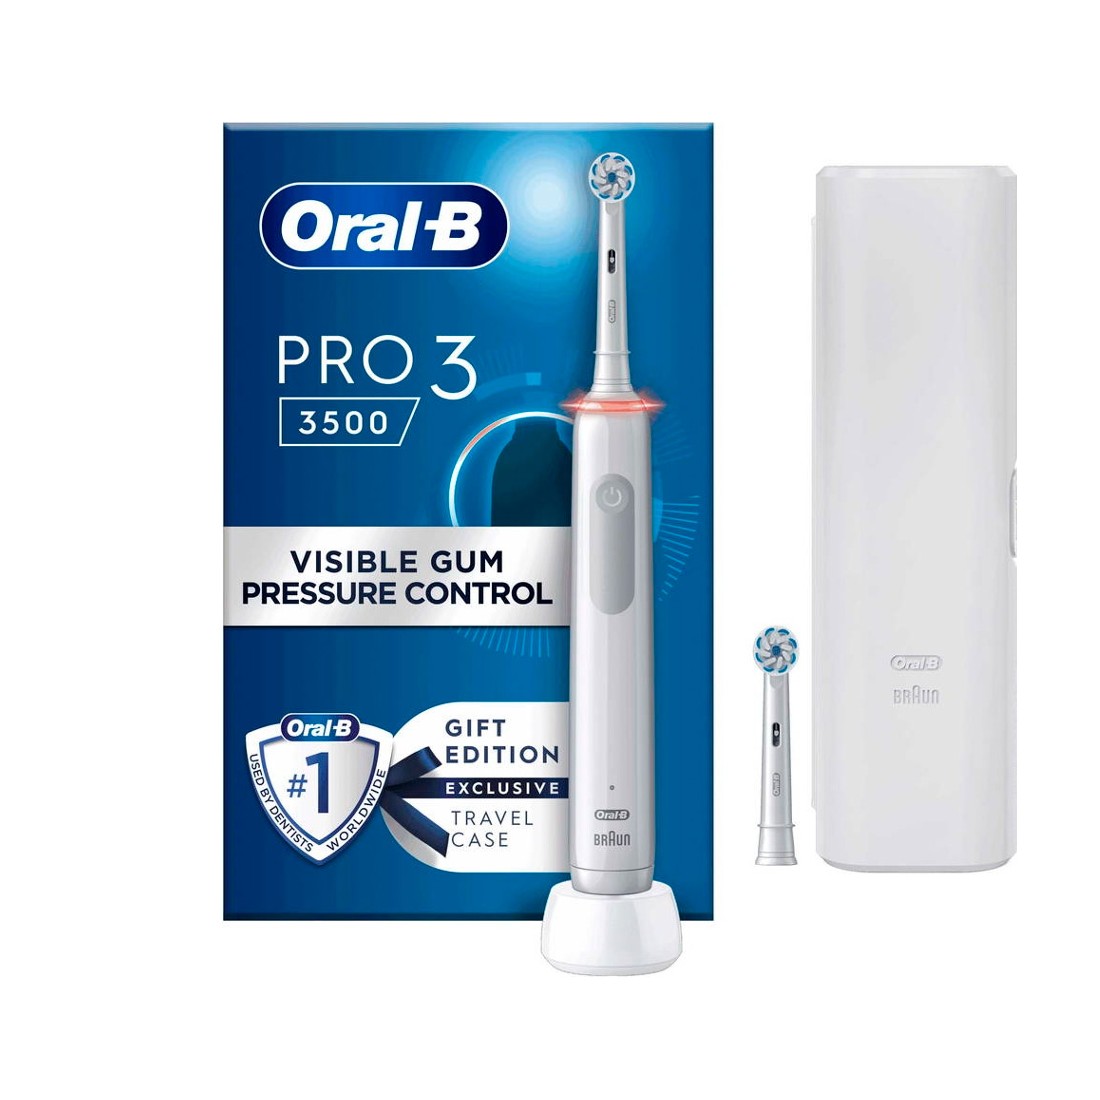 Cepillo eléctrico  Oral-B Pro 3 3500, Con 1 Estuche De Viaje Y 1 Cabezal,  Diseñado Por Braun, Negro